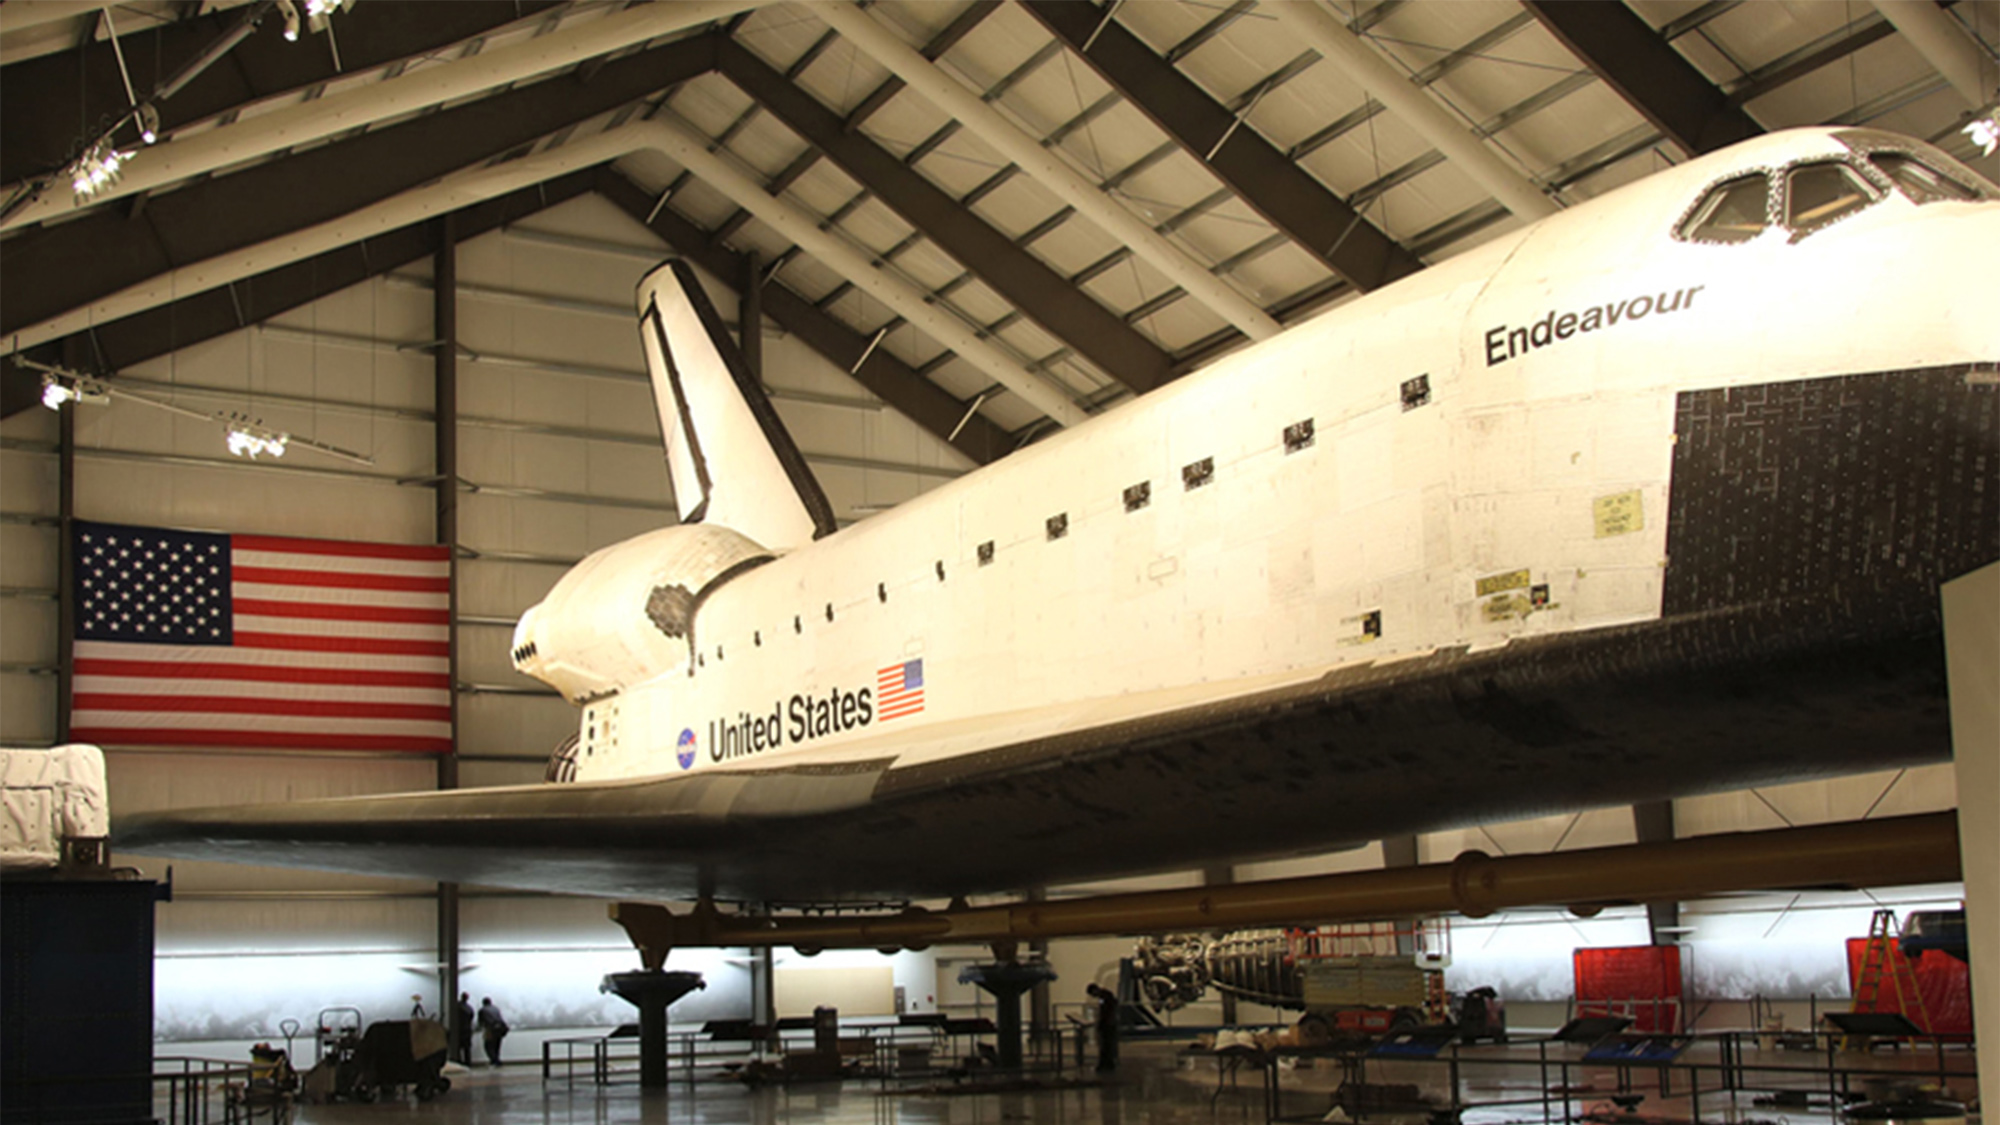 Endeavour space shuttle pavilion